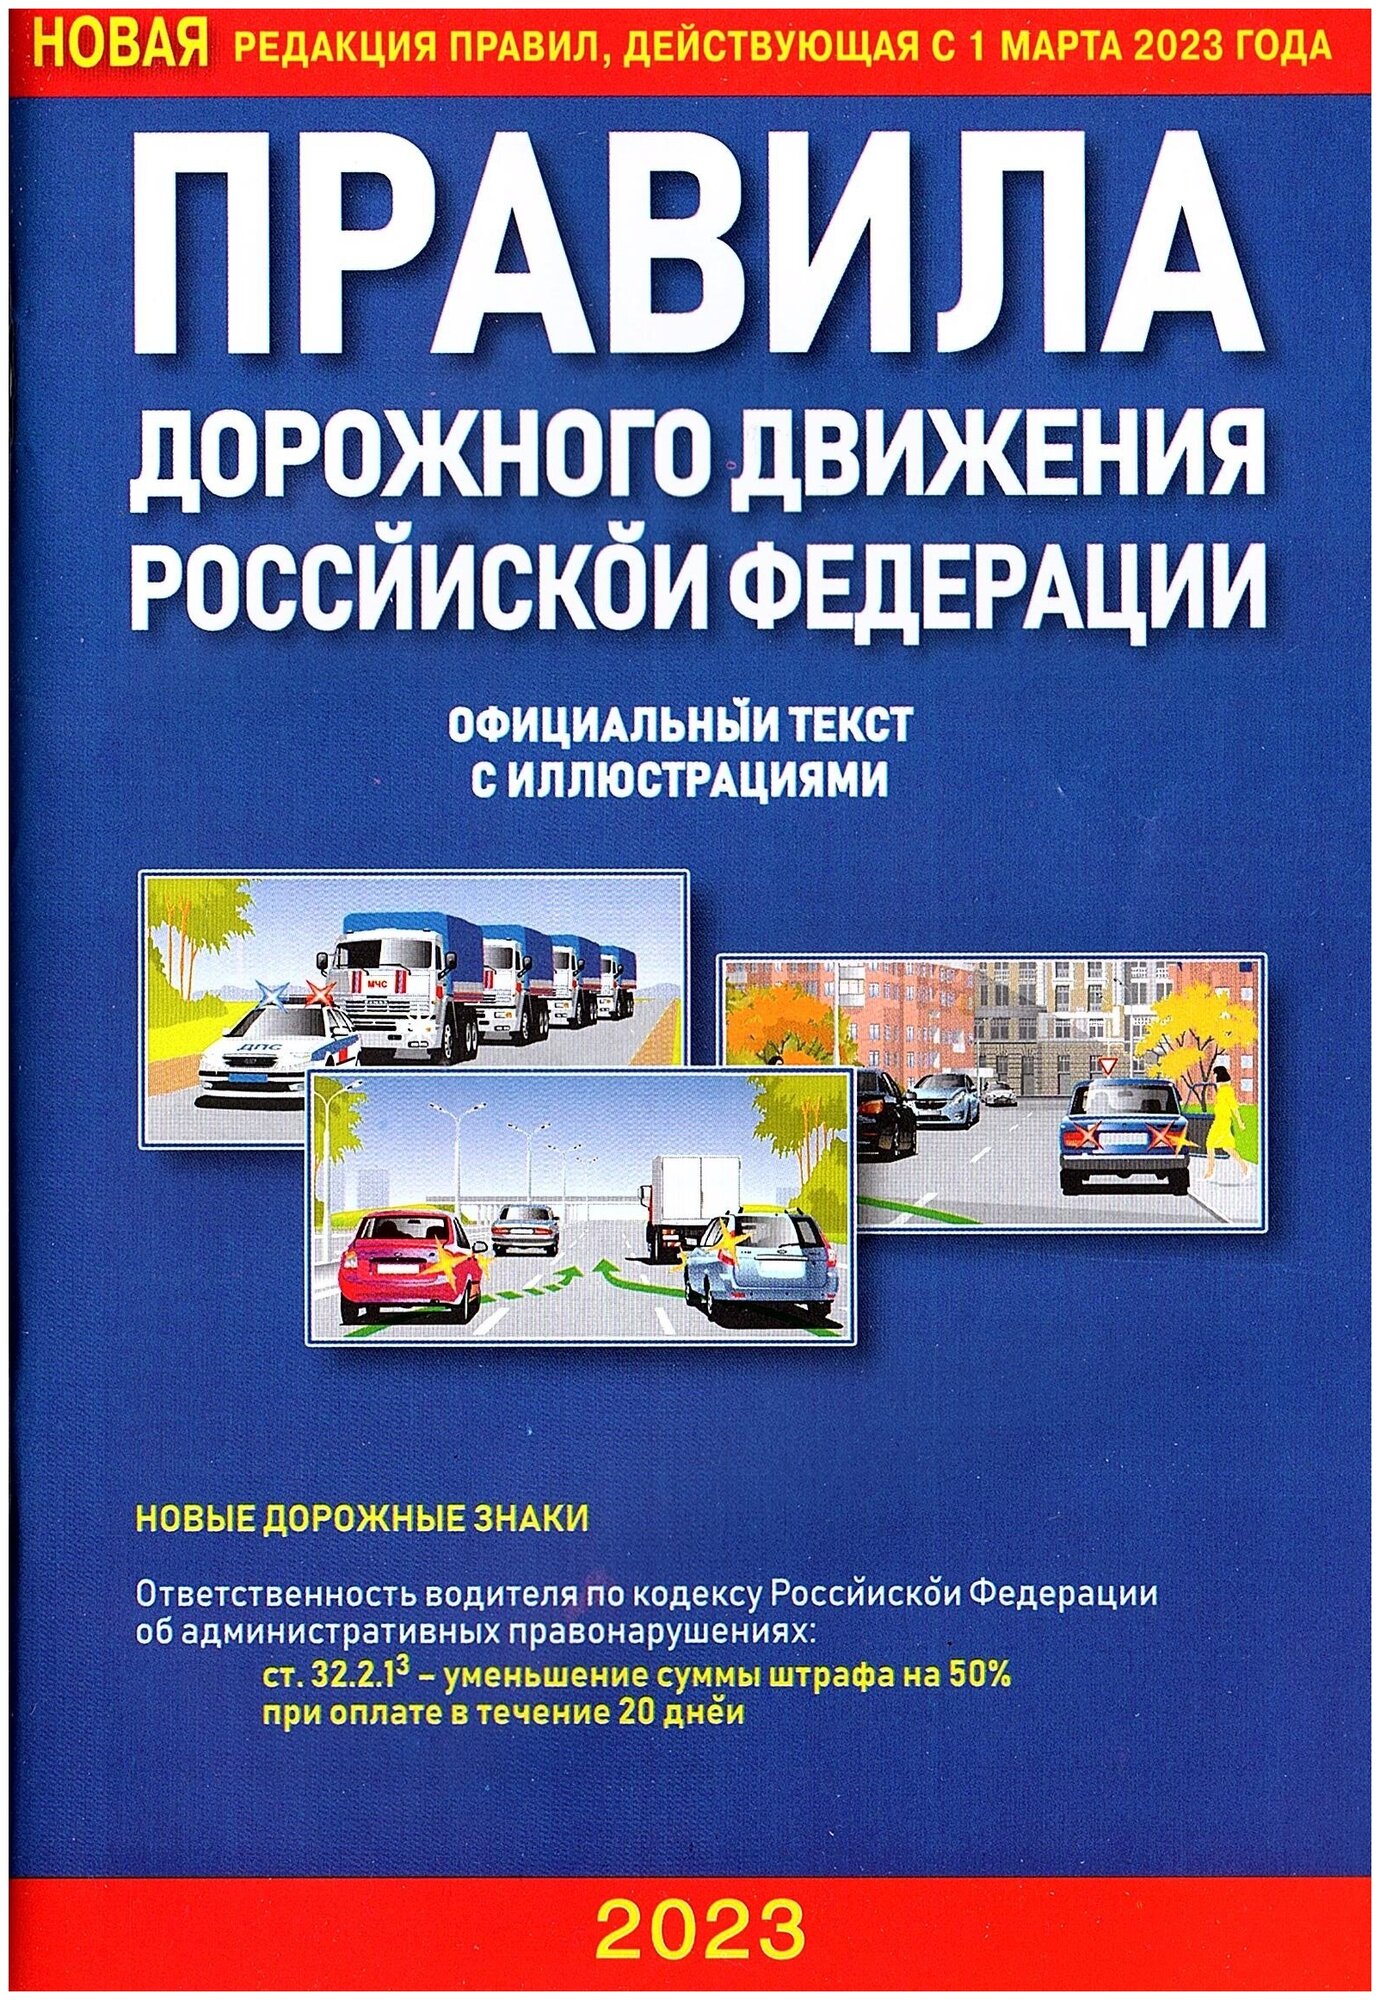 Правила дорожного движения РФ (ПДД 2023) официальный текст с иллюстрациями (редакция от 1 марта 2023г)